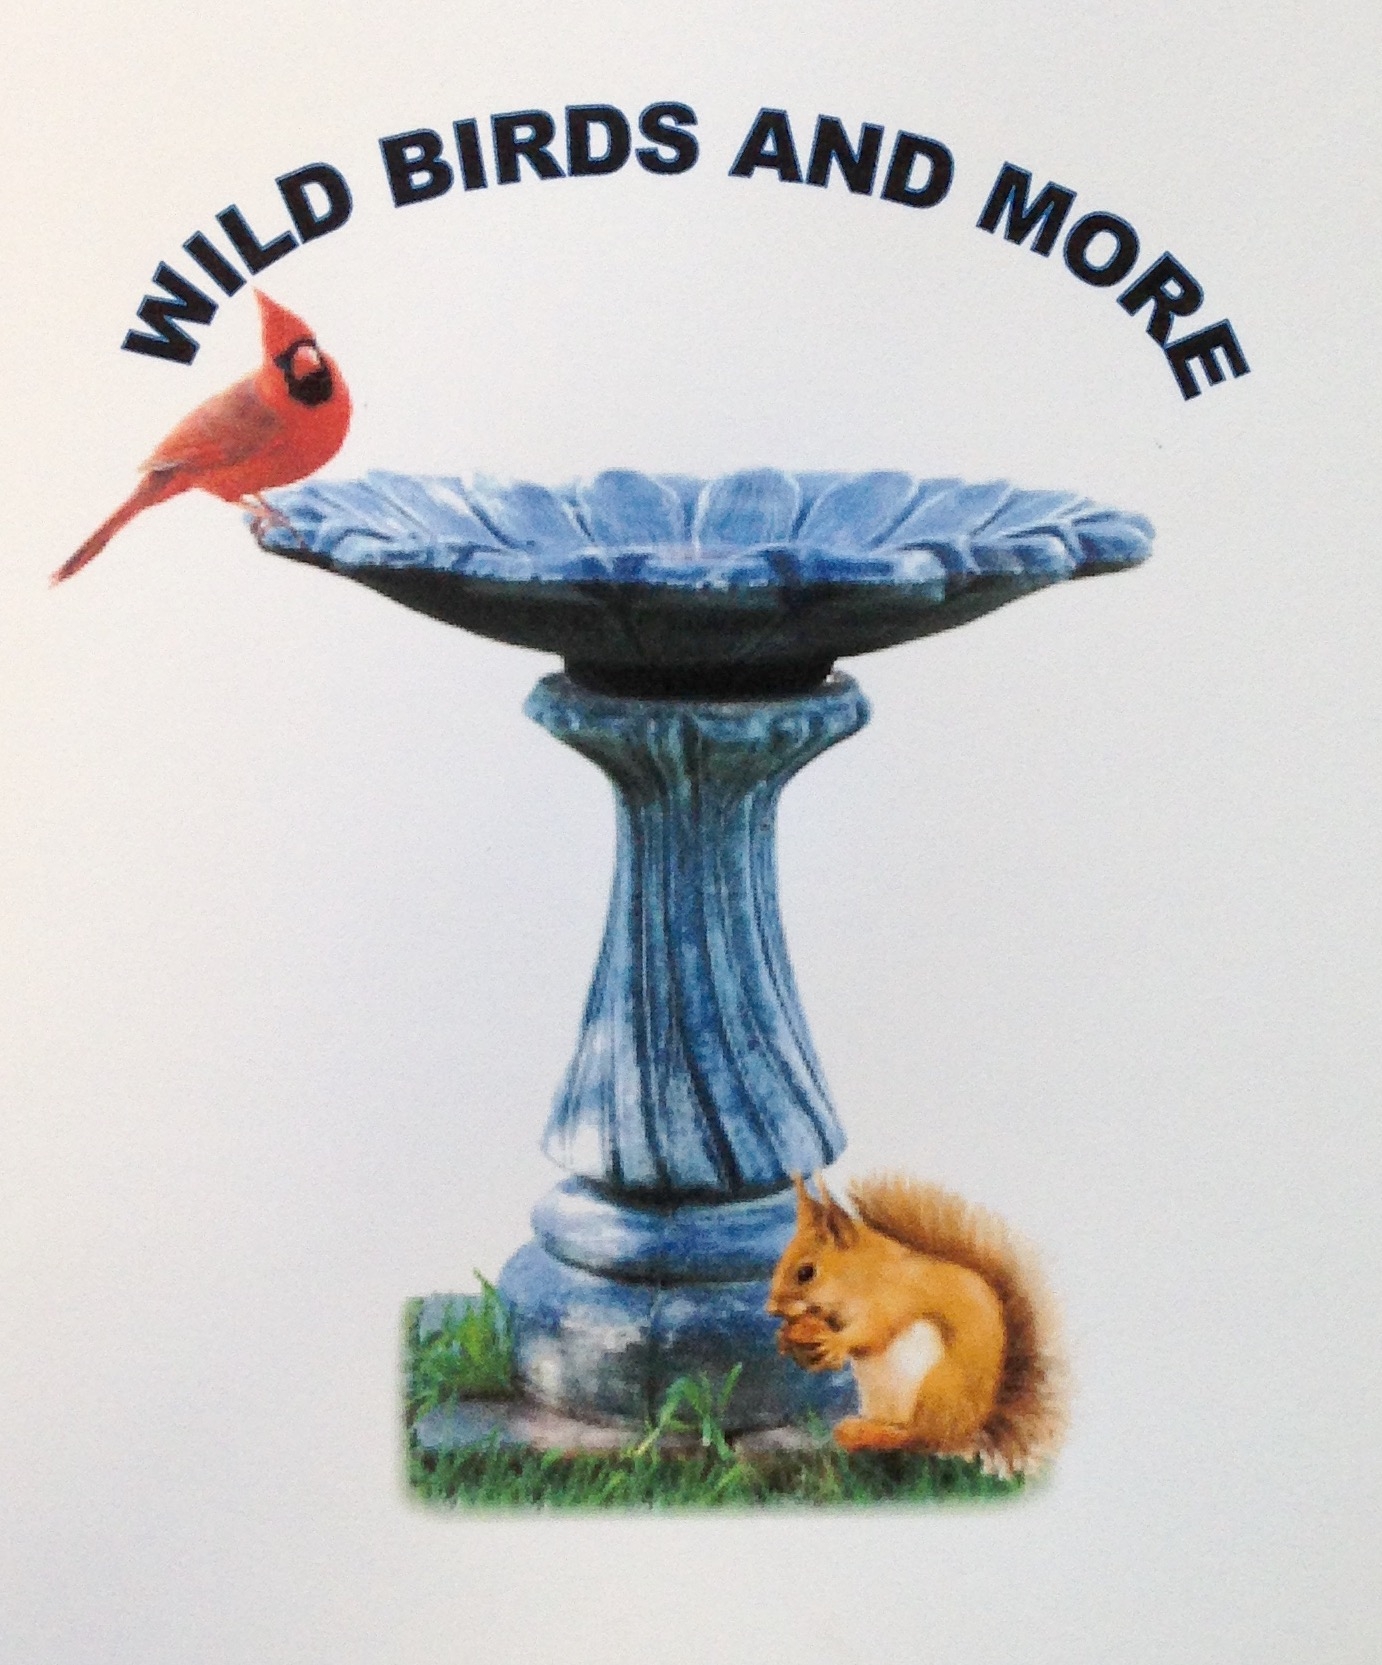 Bird Feeders — Wild Birds & More